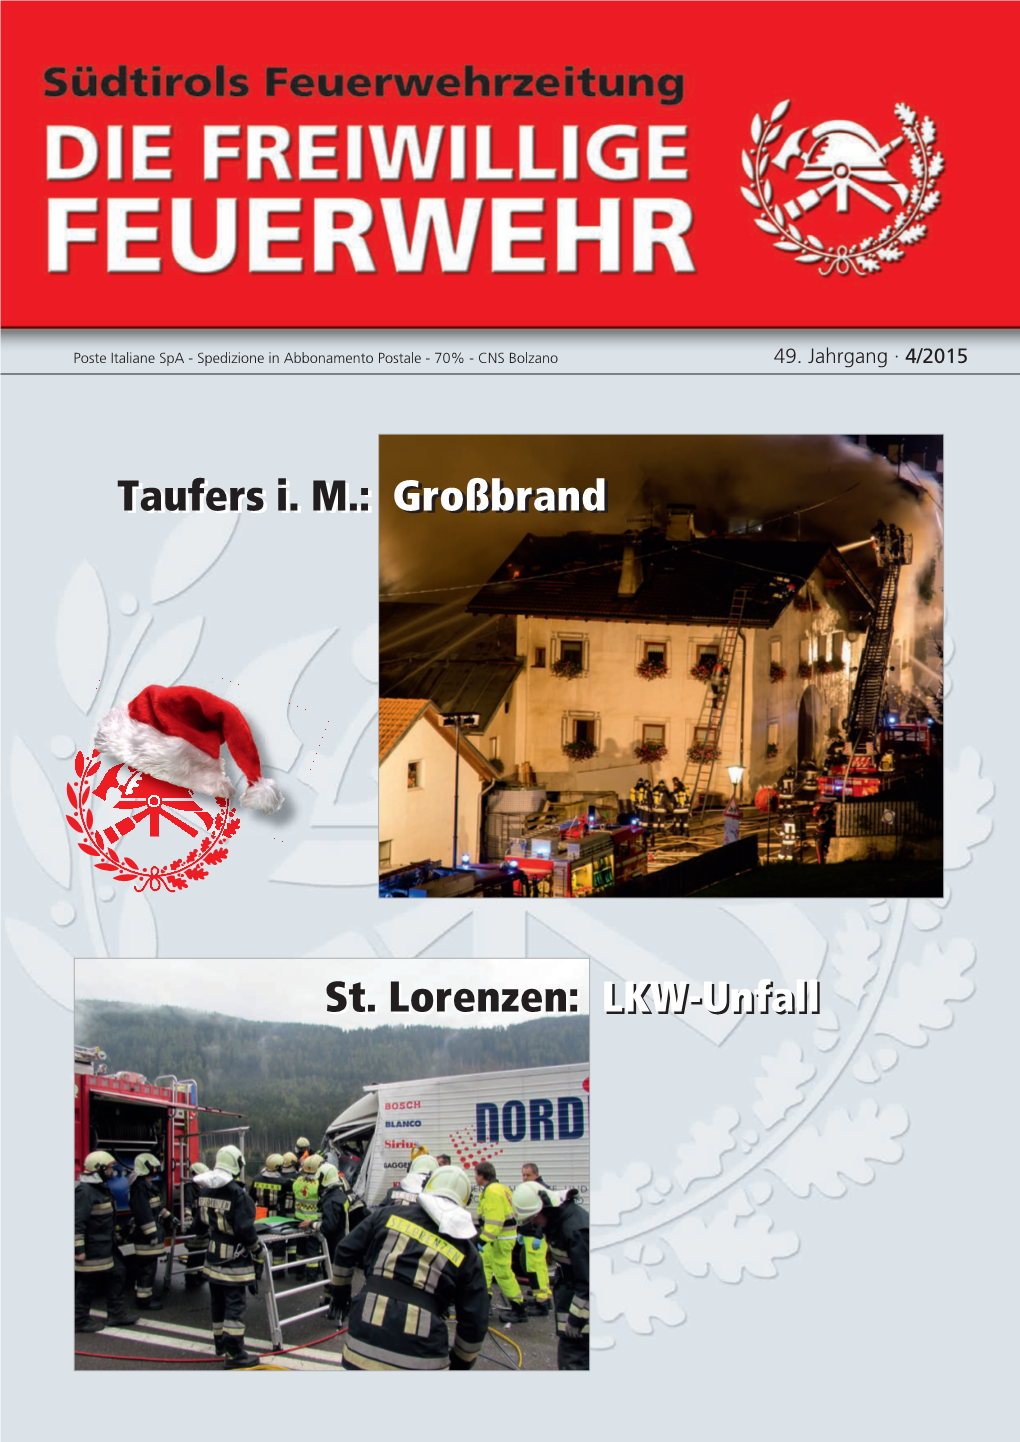 Taufers I. M.: Großbrand Taufers I. M.: Großbrand St. Lorenzen: LKW-Unfall St. Lorenzen: LKW-Unfall